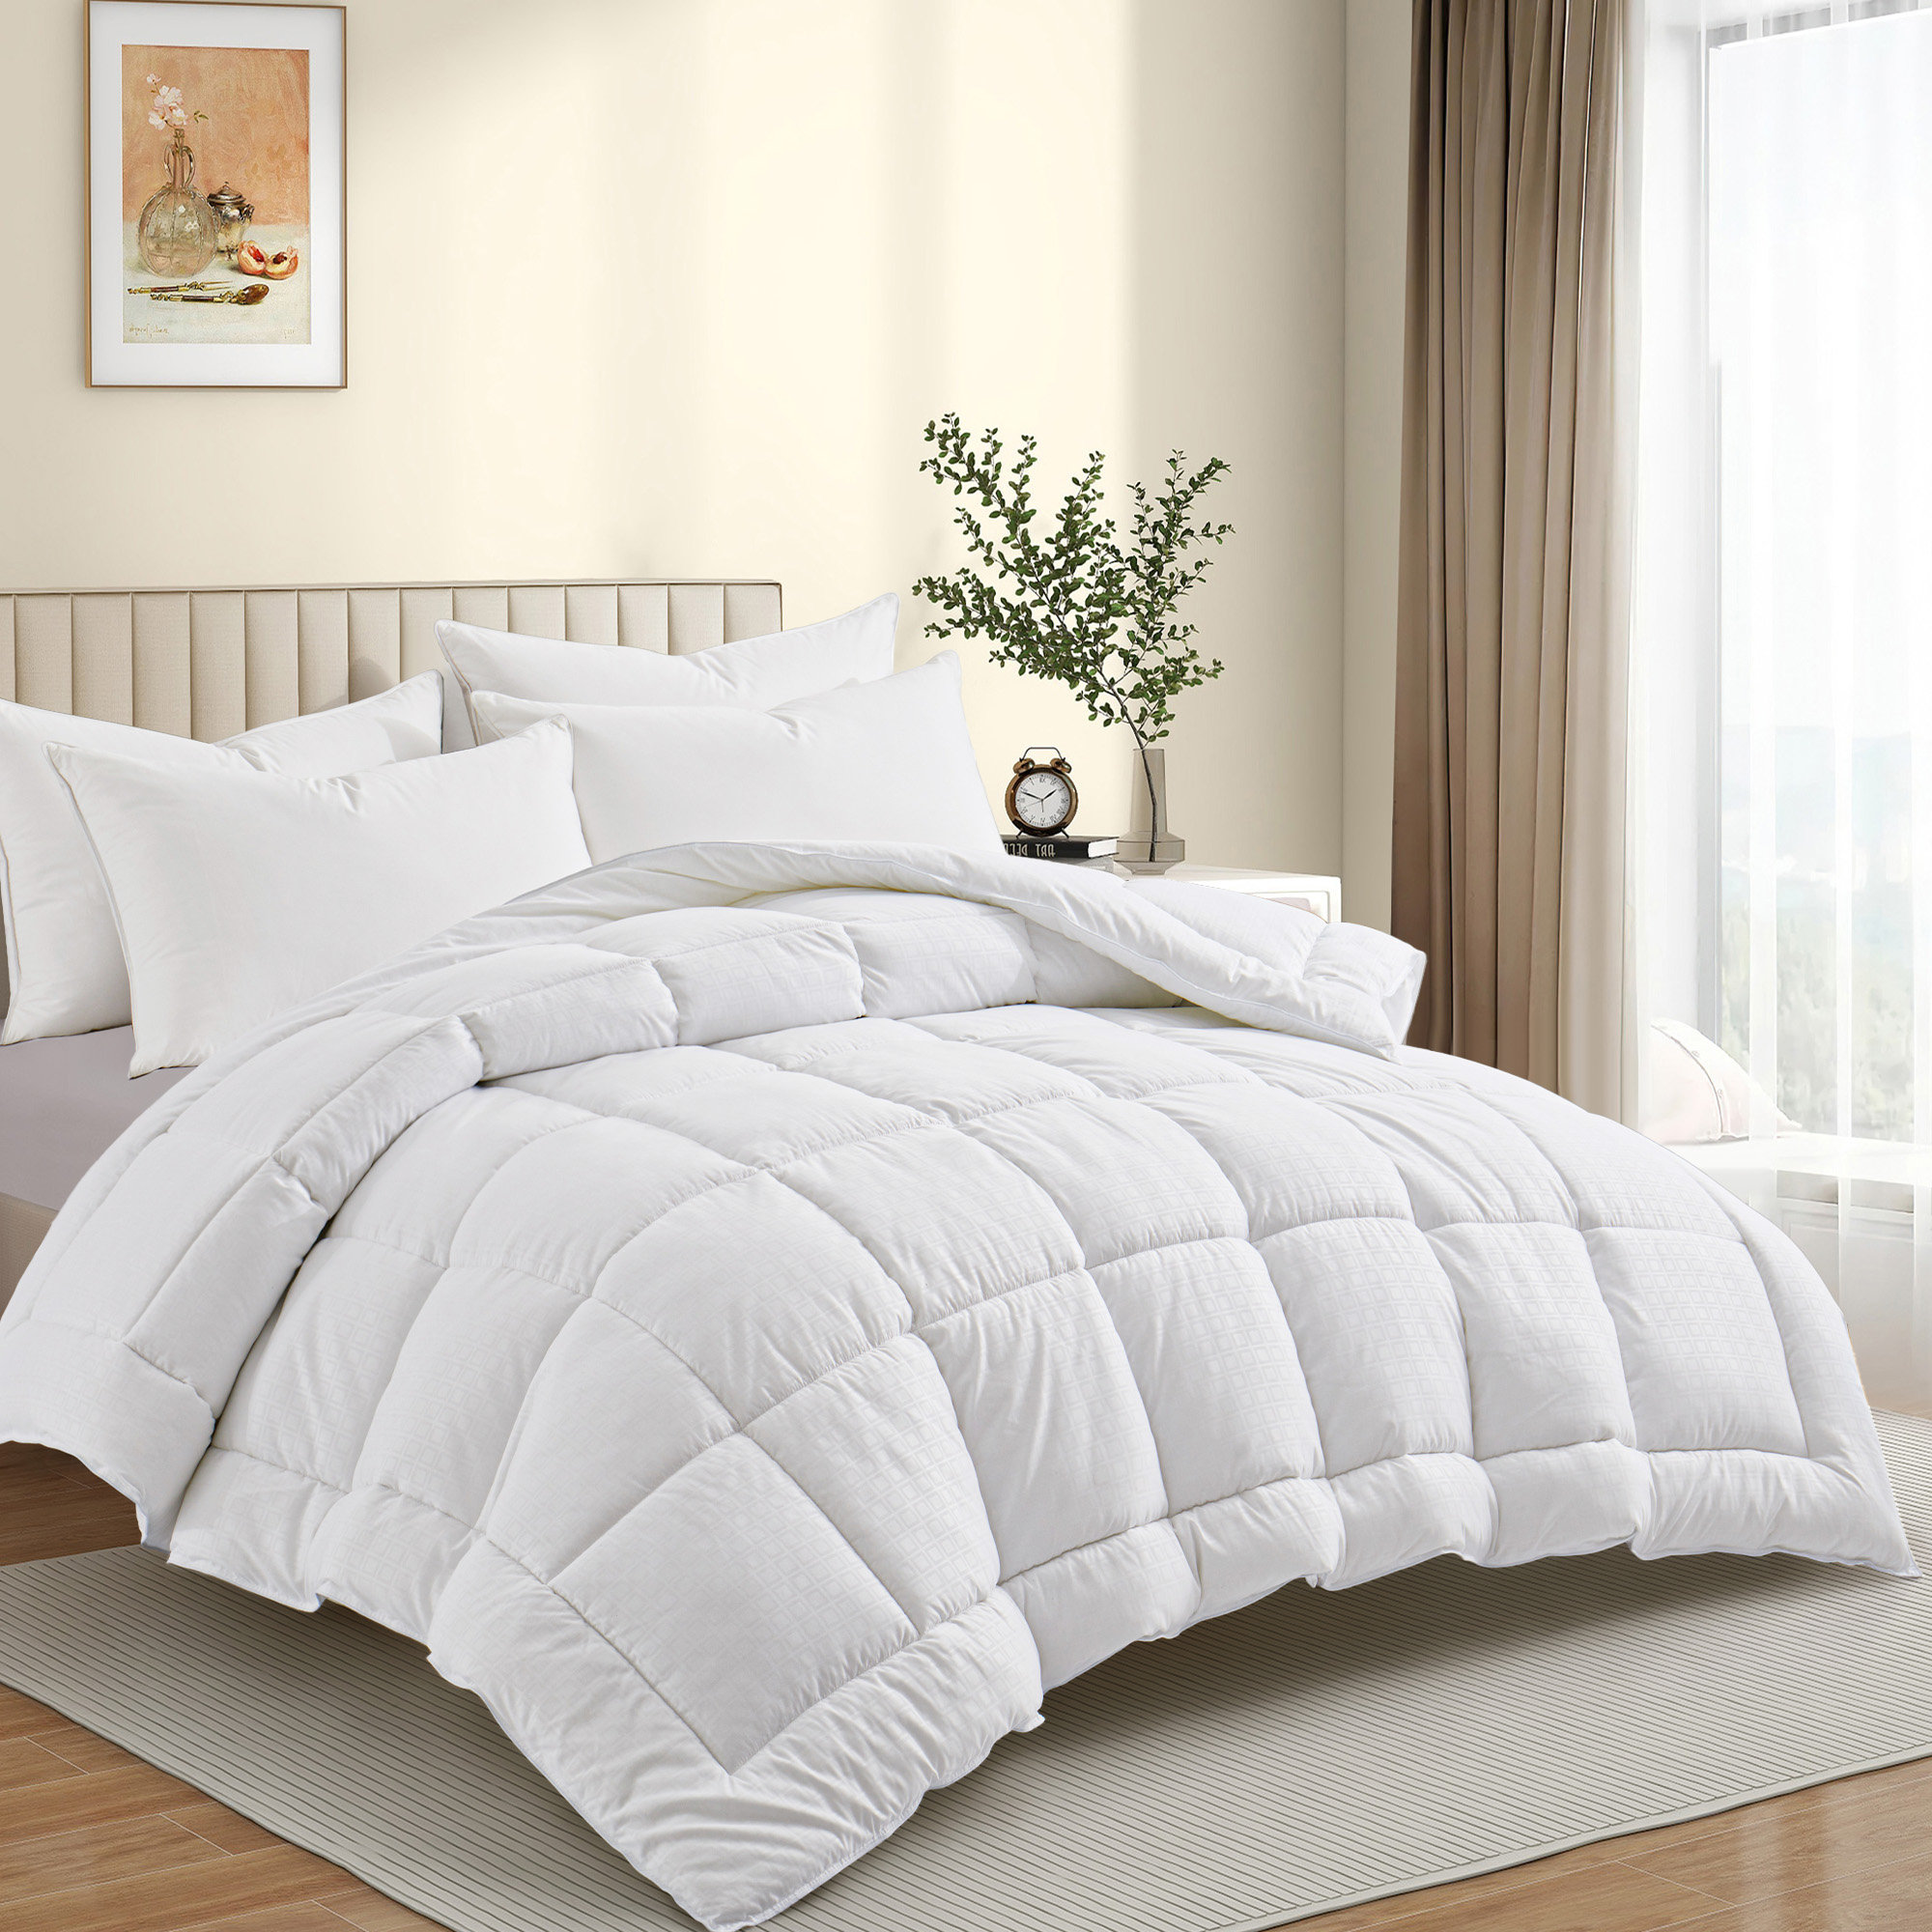 https://assets.wfcdn.com/im/30009886/compr-r85/2627/262727275/wayfair-sleep-all-season-down-alternative-comforter.jpg